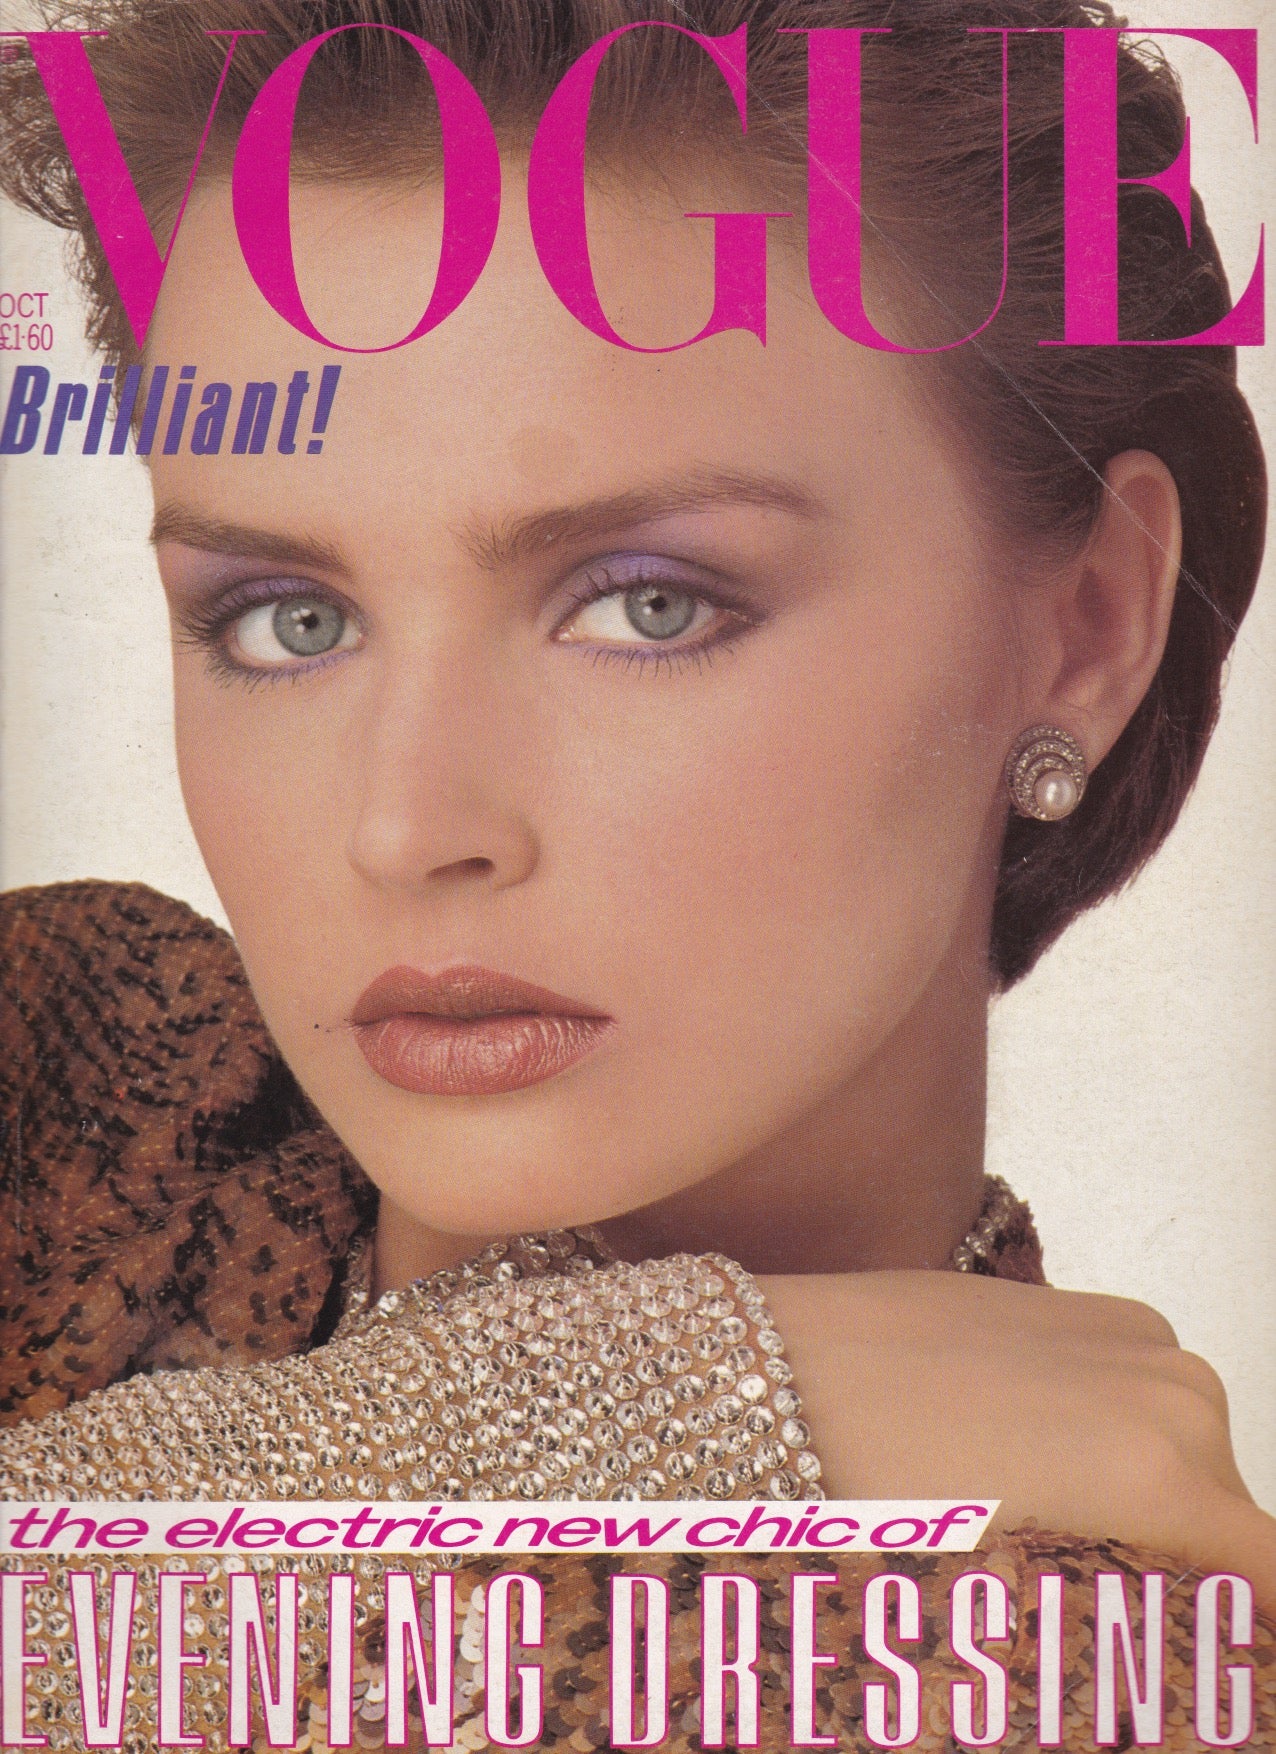 Vogue Magazine October 1983 - Brit Hammer